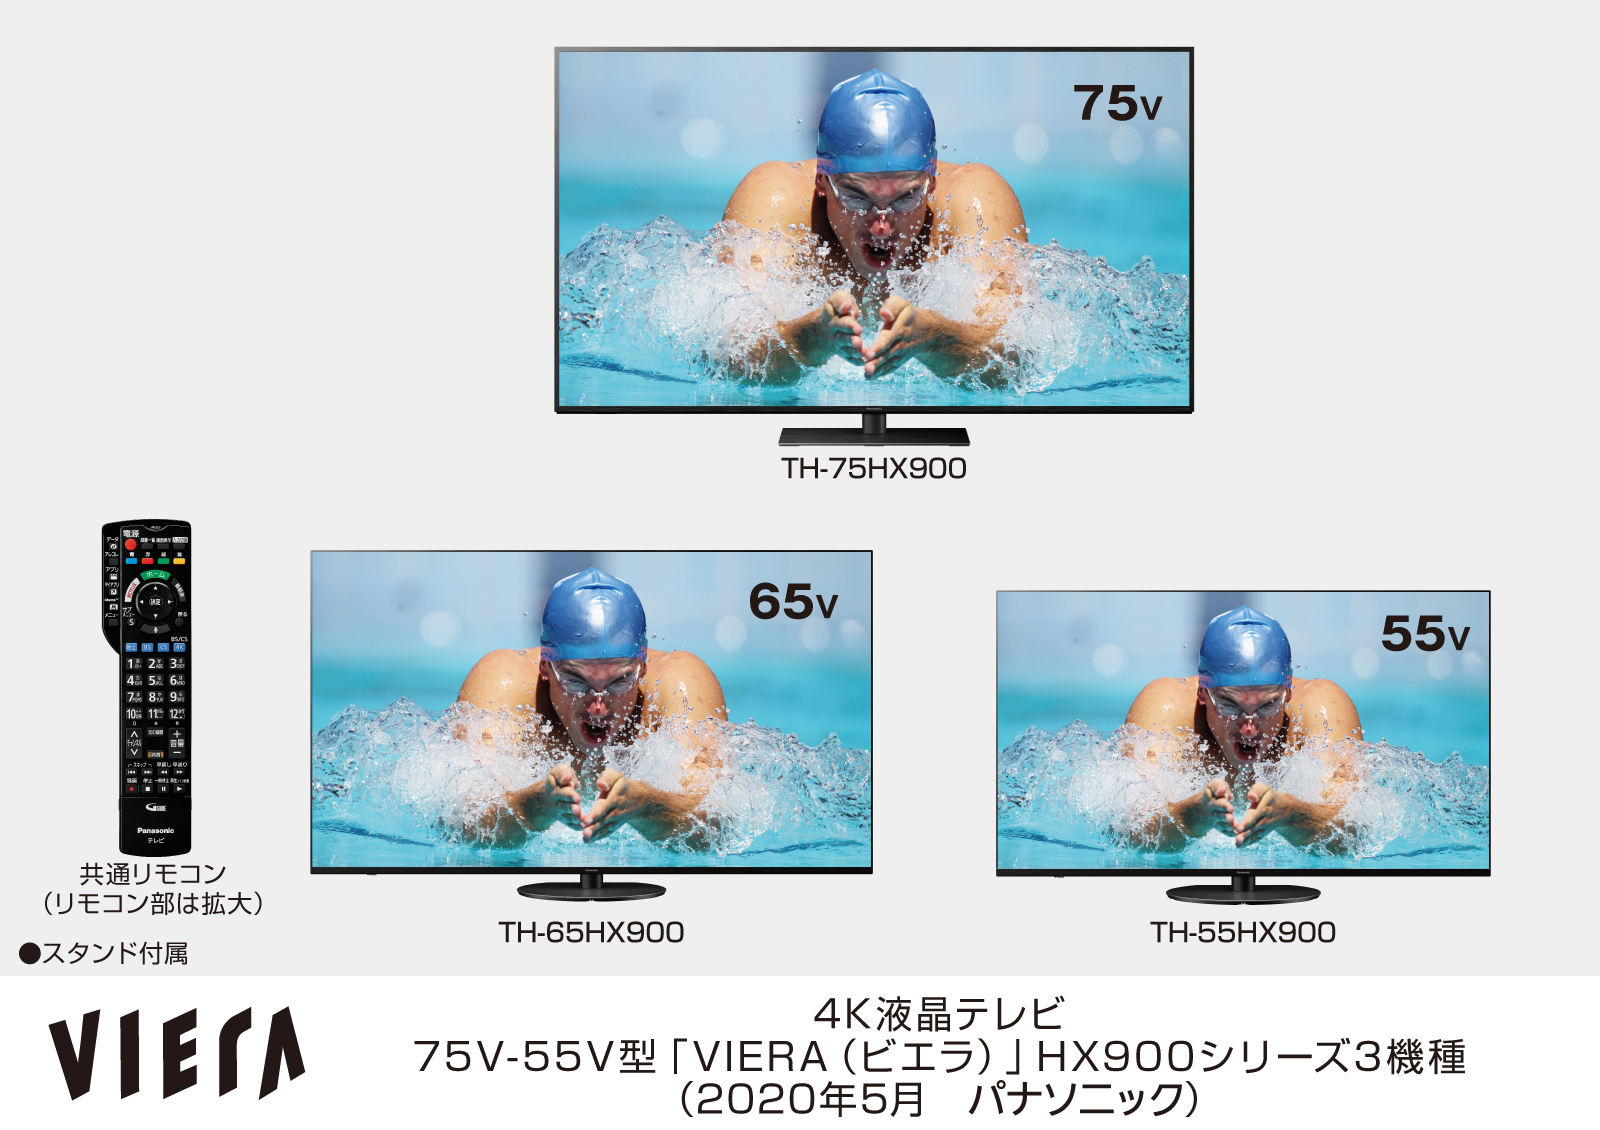 4Kダブルチューナー内蔵ビエラ HX900シリーズ3機種を発売 